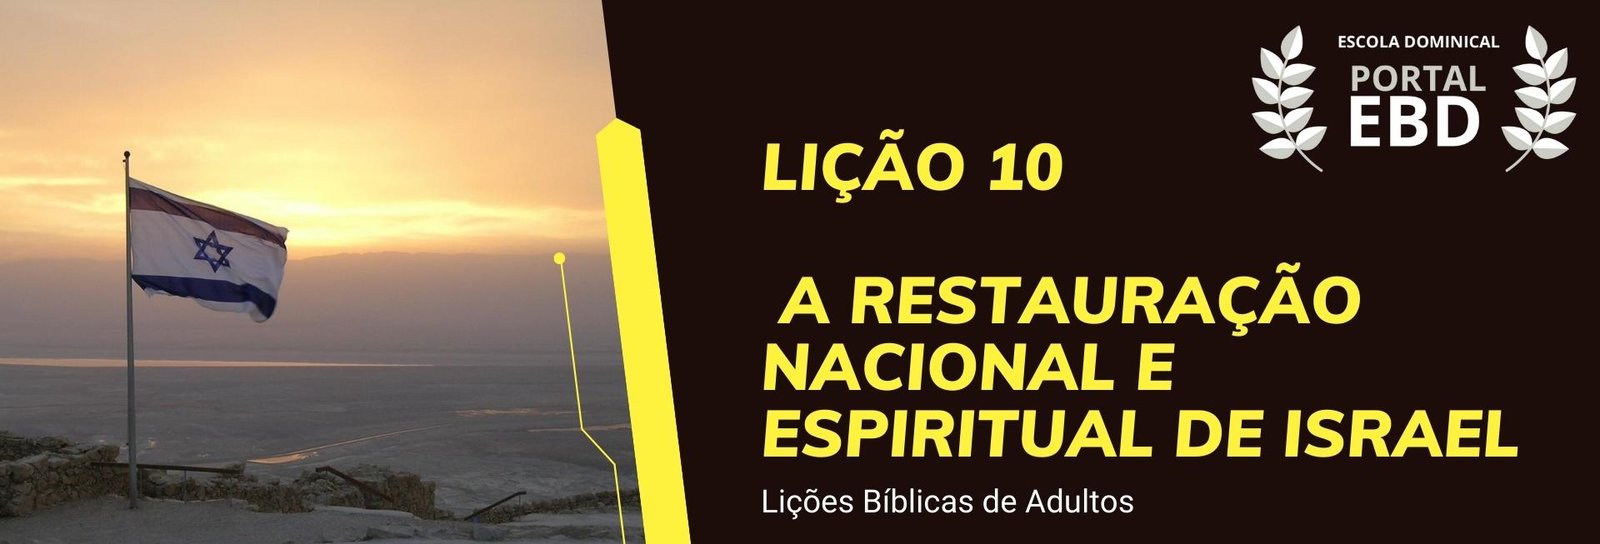 Lição 10 - A restauração nacional e espiritual de Israel VI